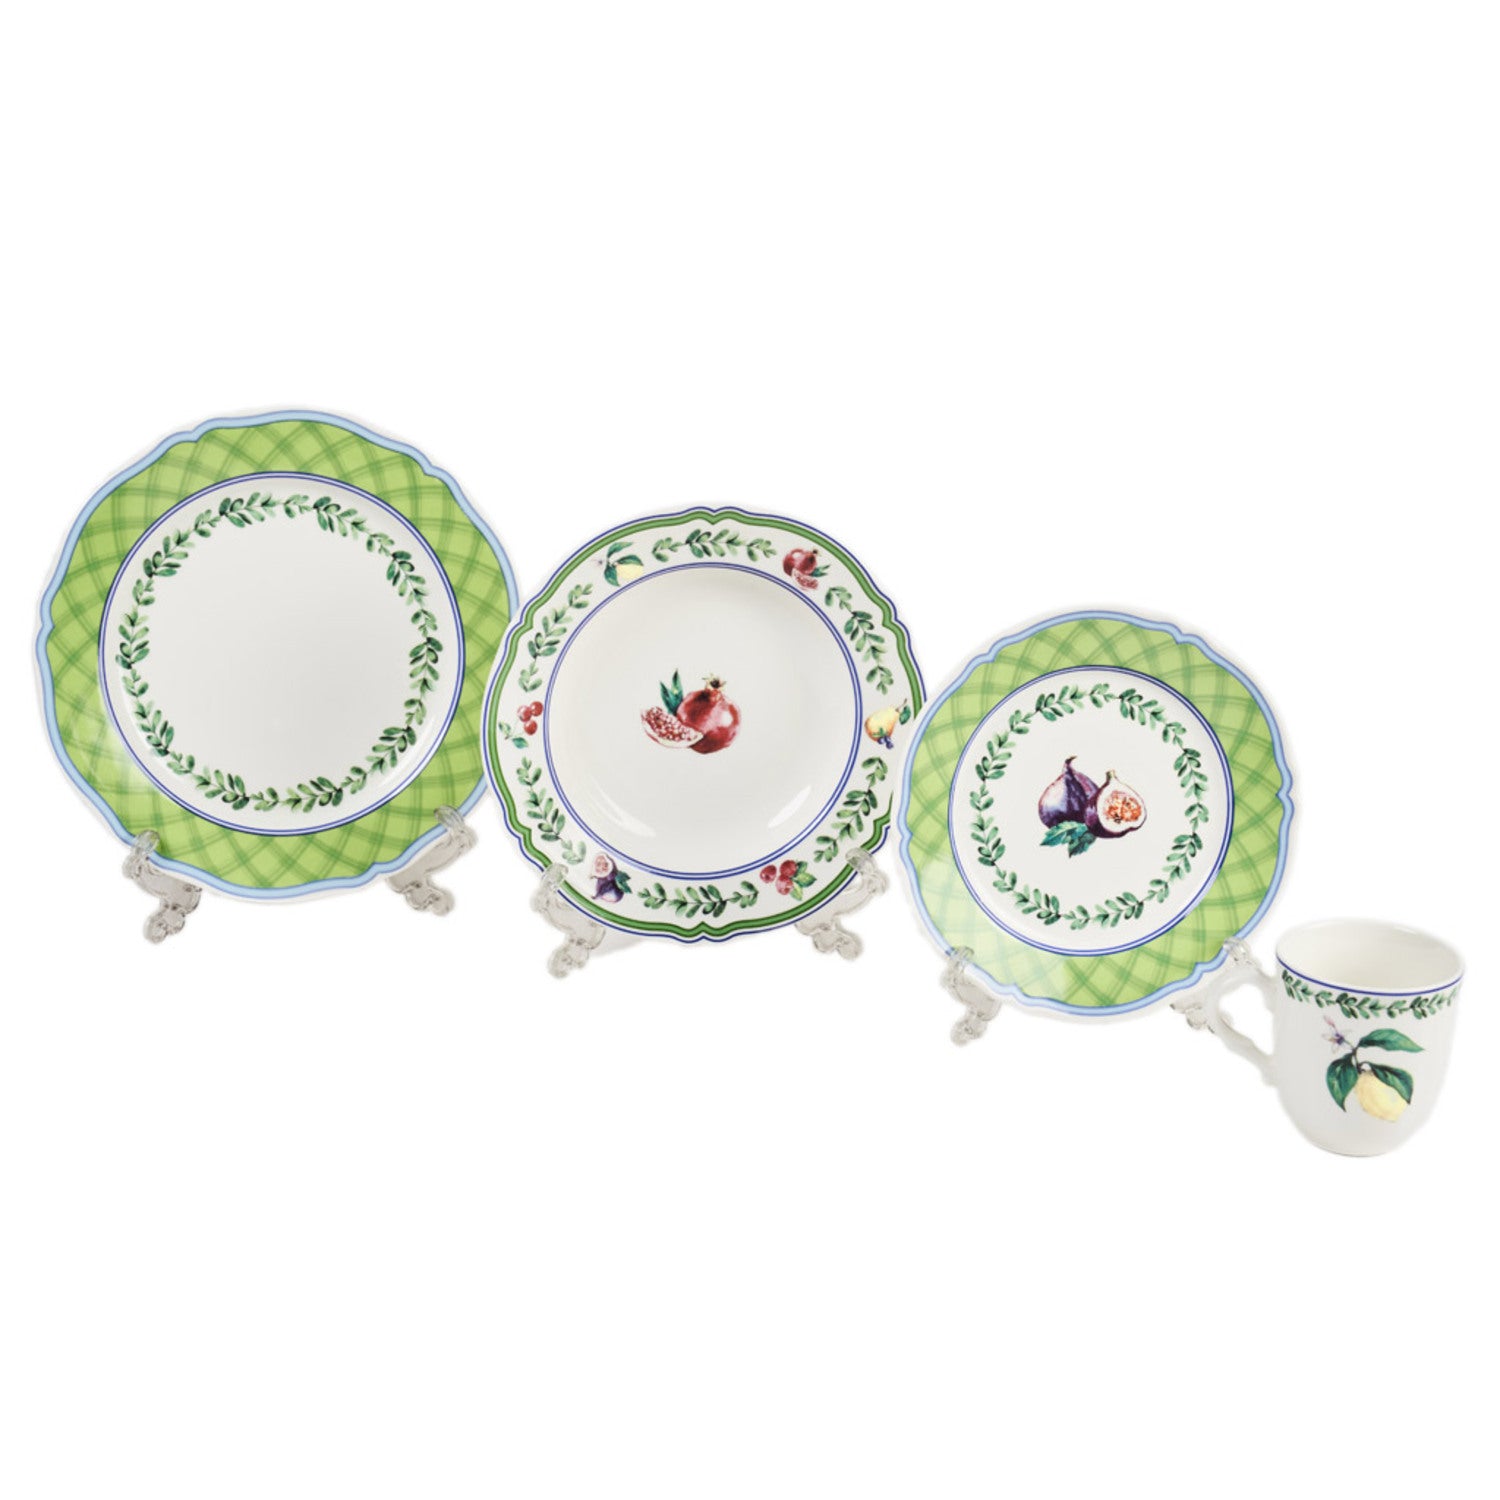 Falkenporzellan Dinner Set, 24 Pieces -Green -Porcelain